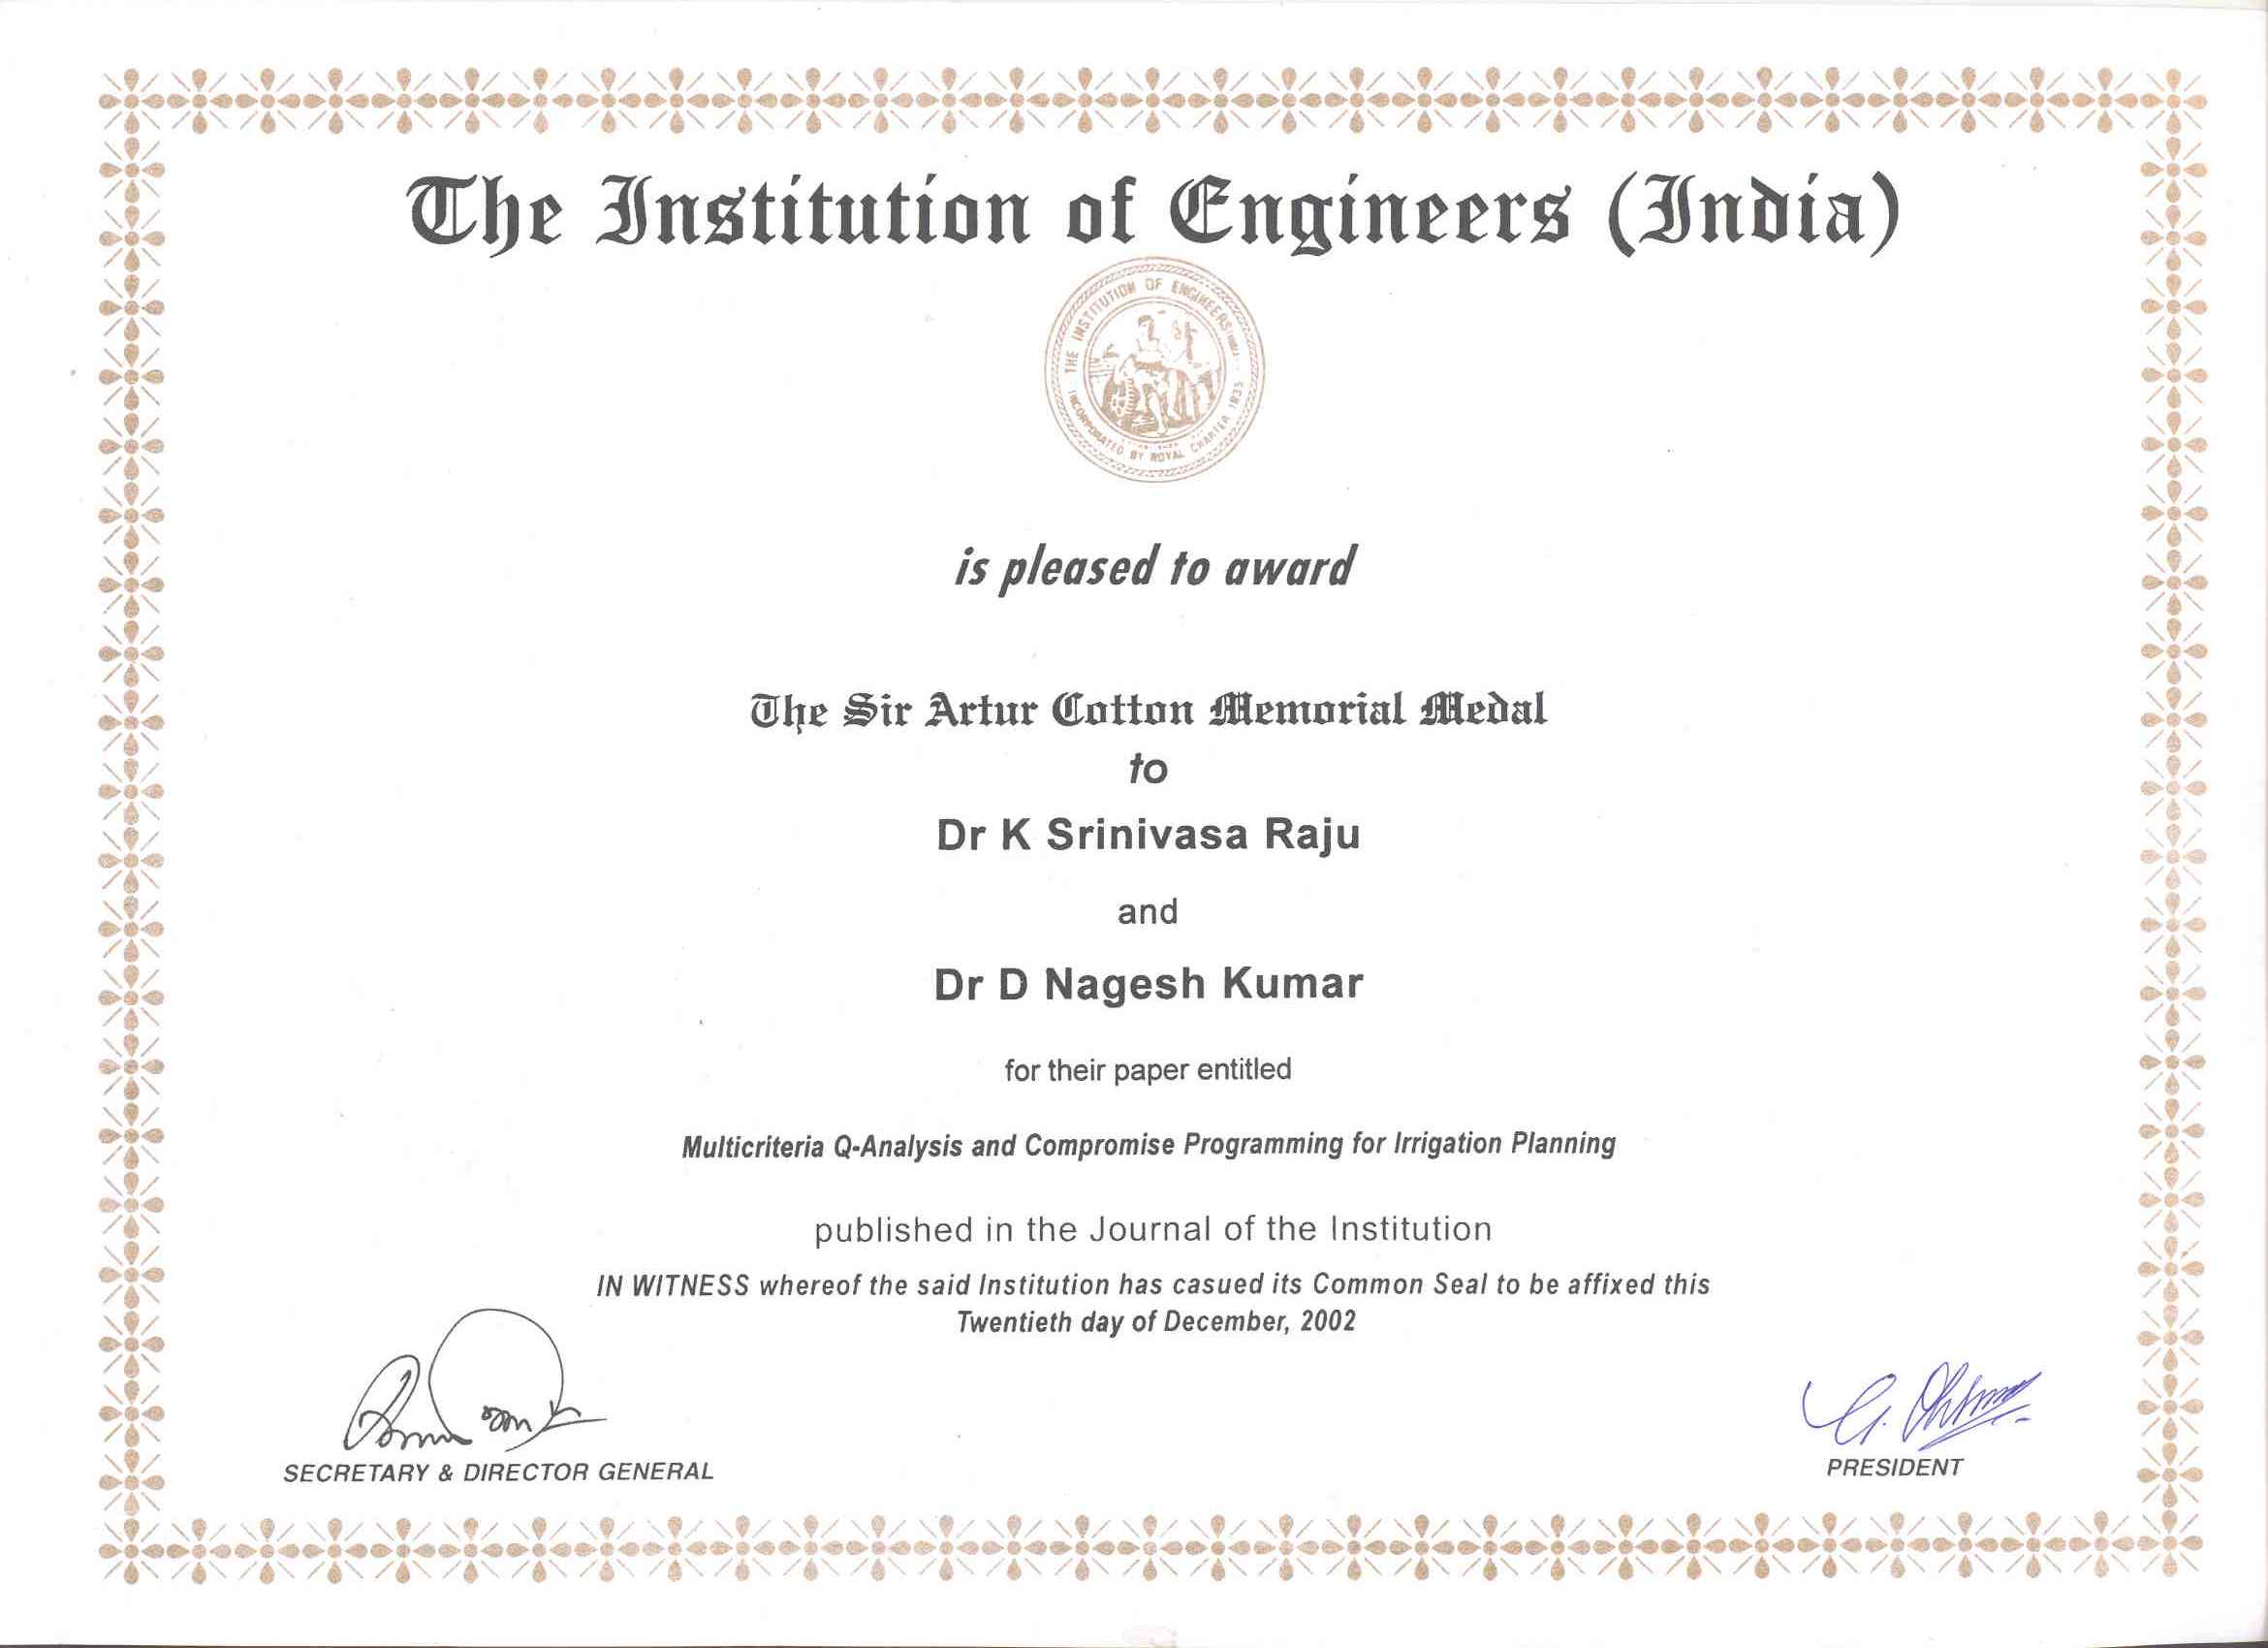 Phd thesis civil engineering